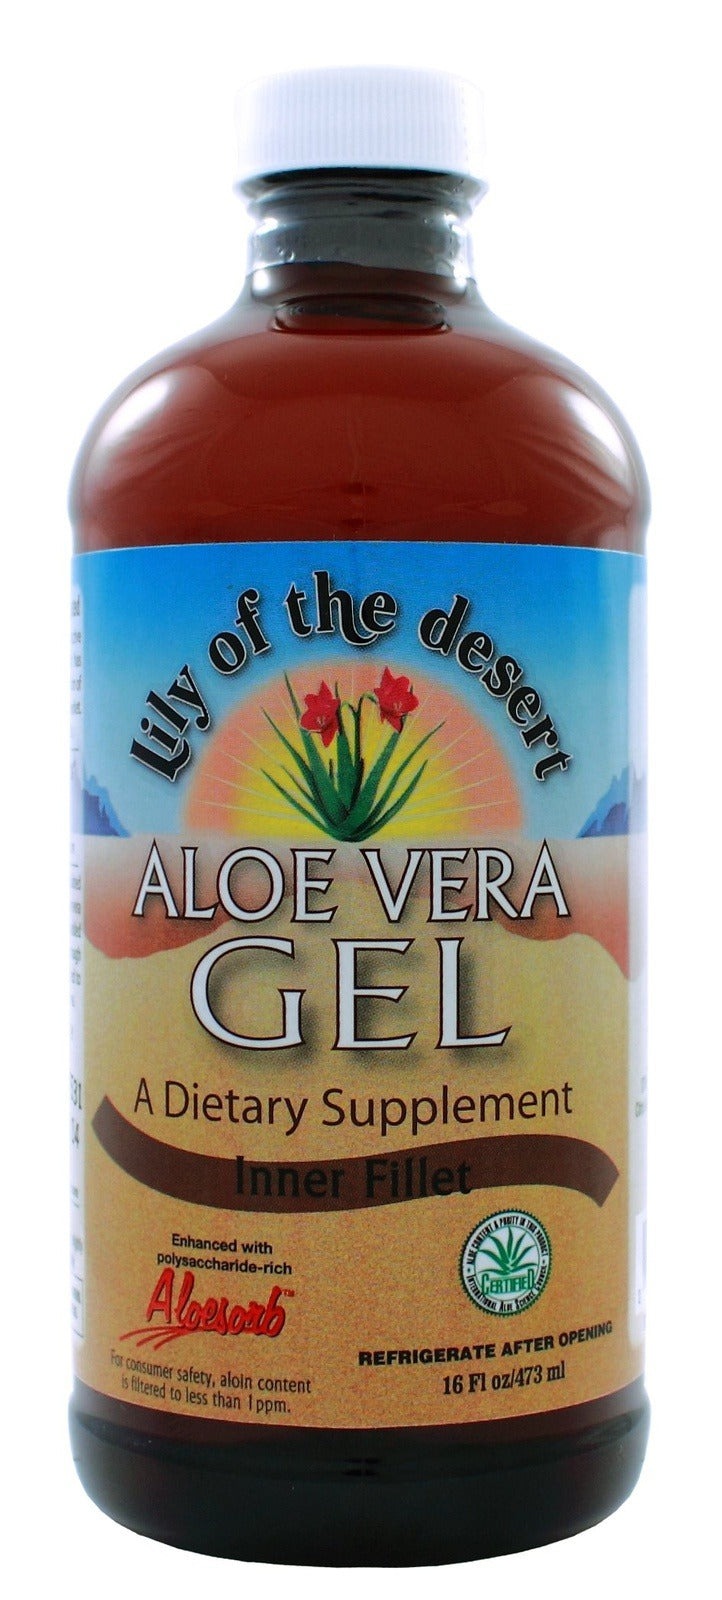 Lily of The Desert Aloe Vera Gel - Inner Fillet Image 1